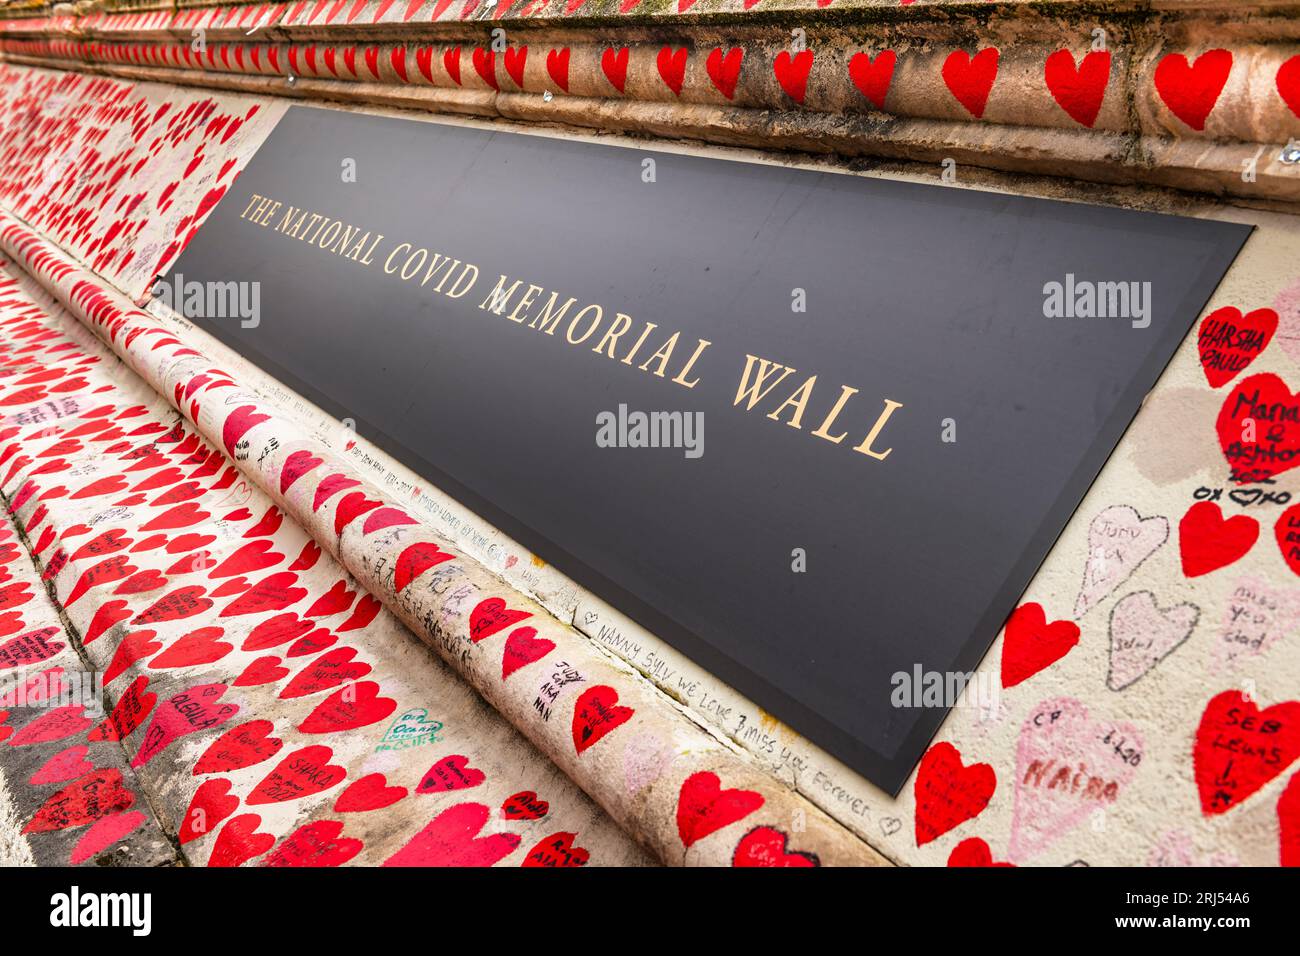 Die nationale COVID-Gedenkwand ist ein öffentliches Wandgemälde zum Gedenken an die Opfer der COVID-19-Pandemie im Vereinigten Königreich. Fünf hundert Meter lang Stockfoto